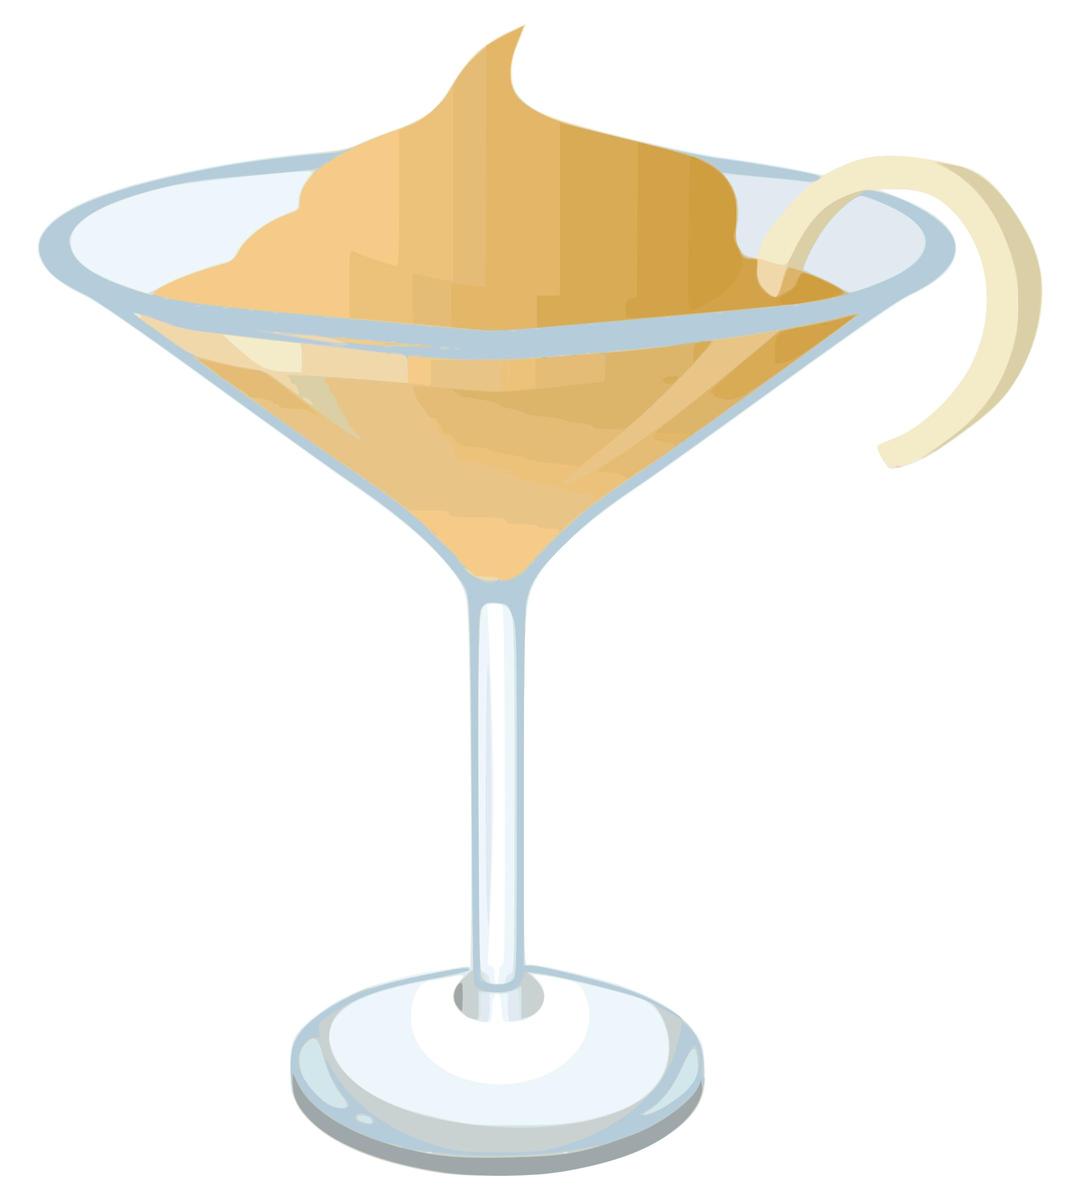 Creamy-martini-glitch png transparent